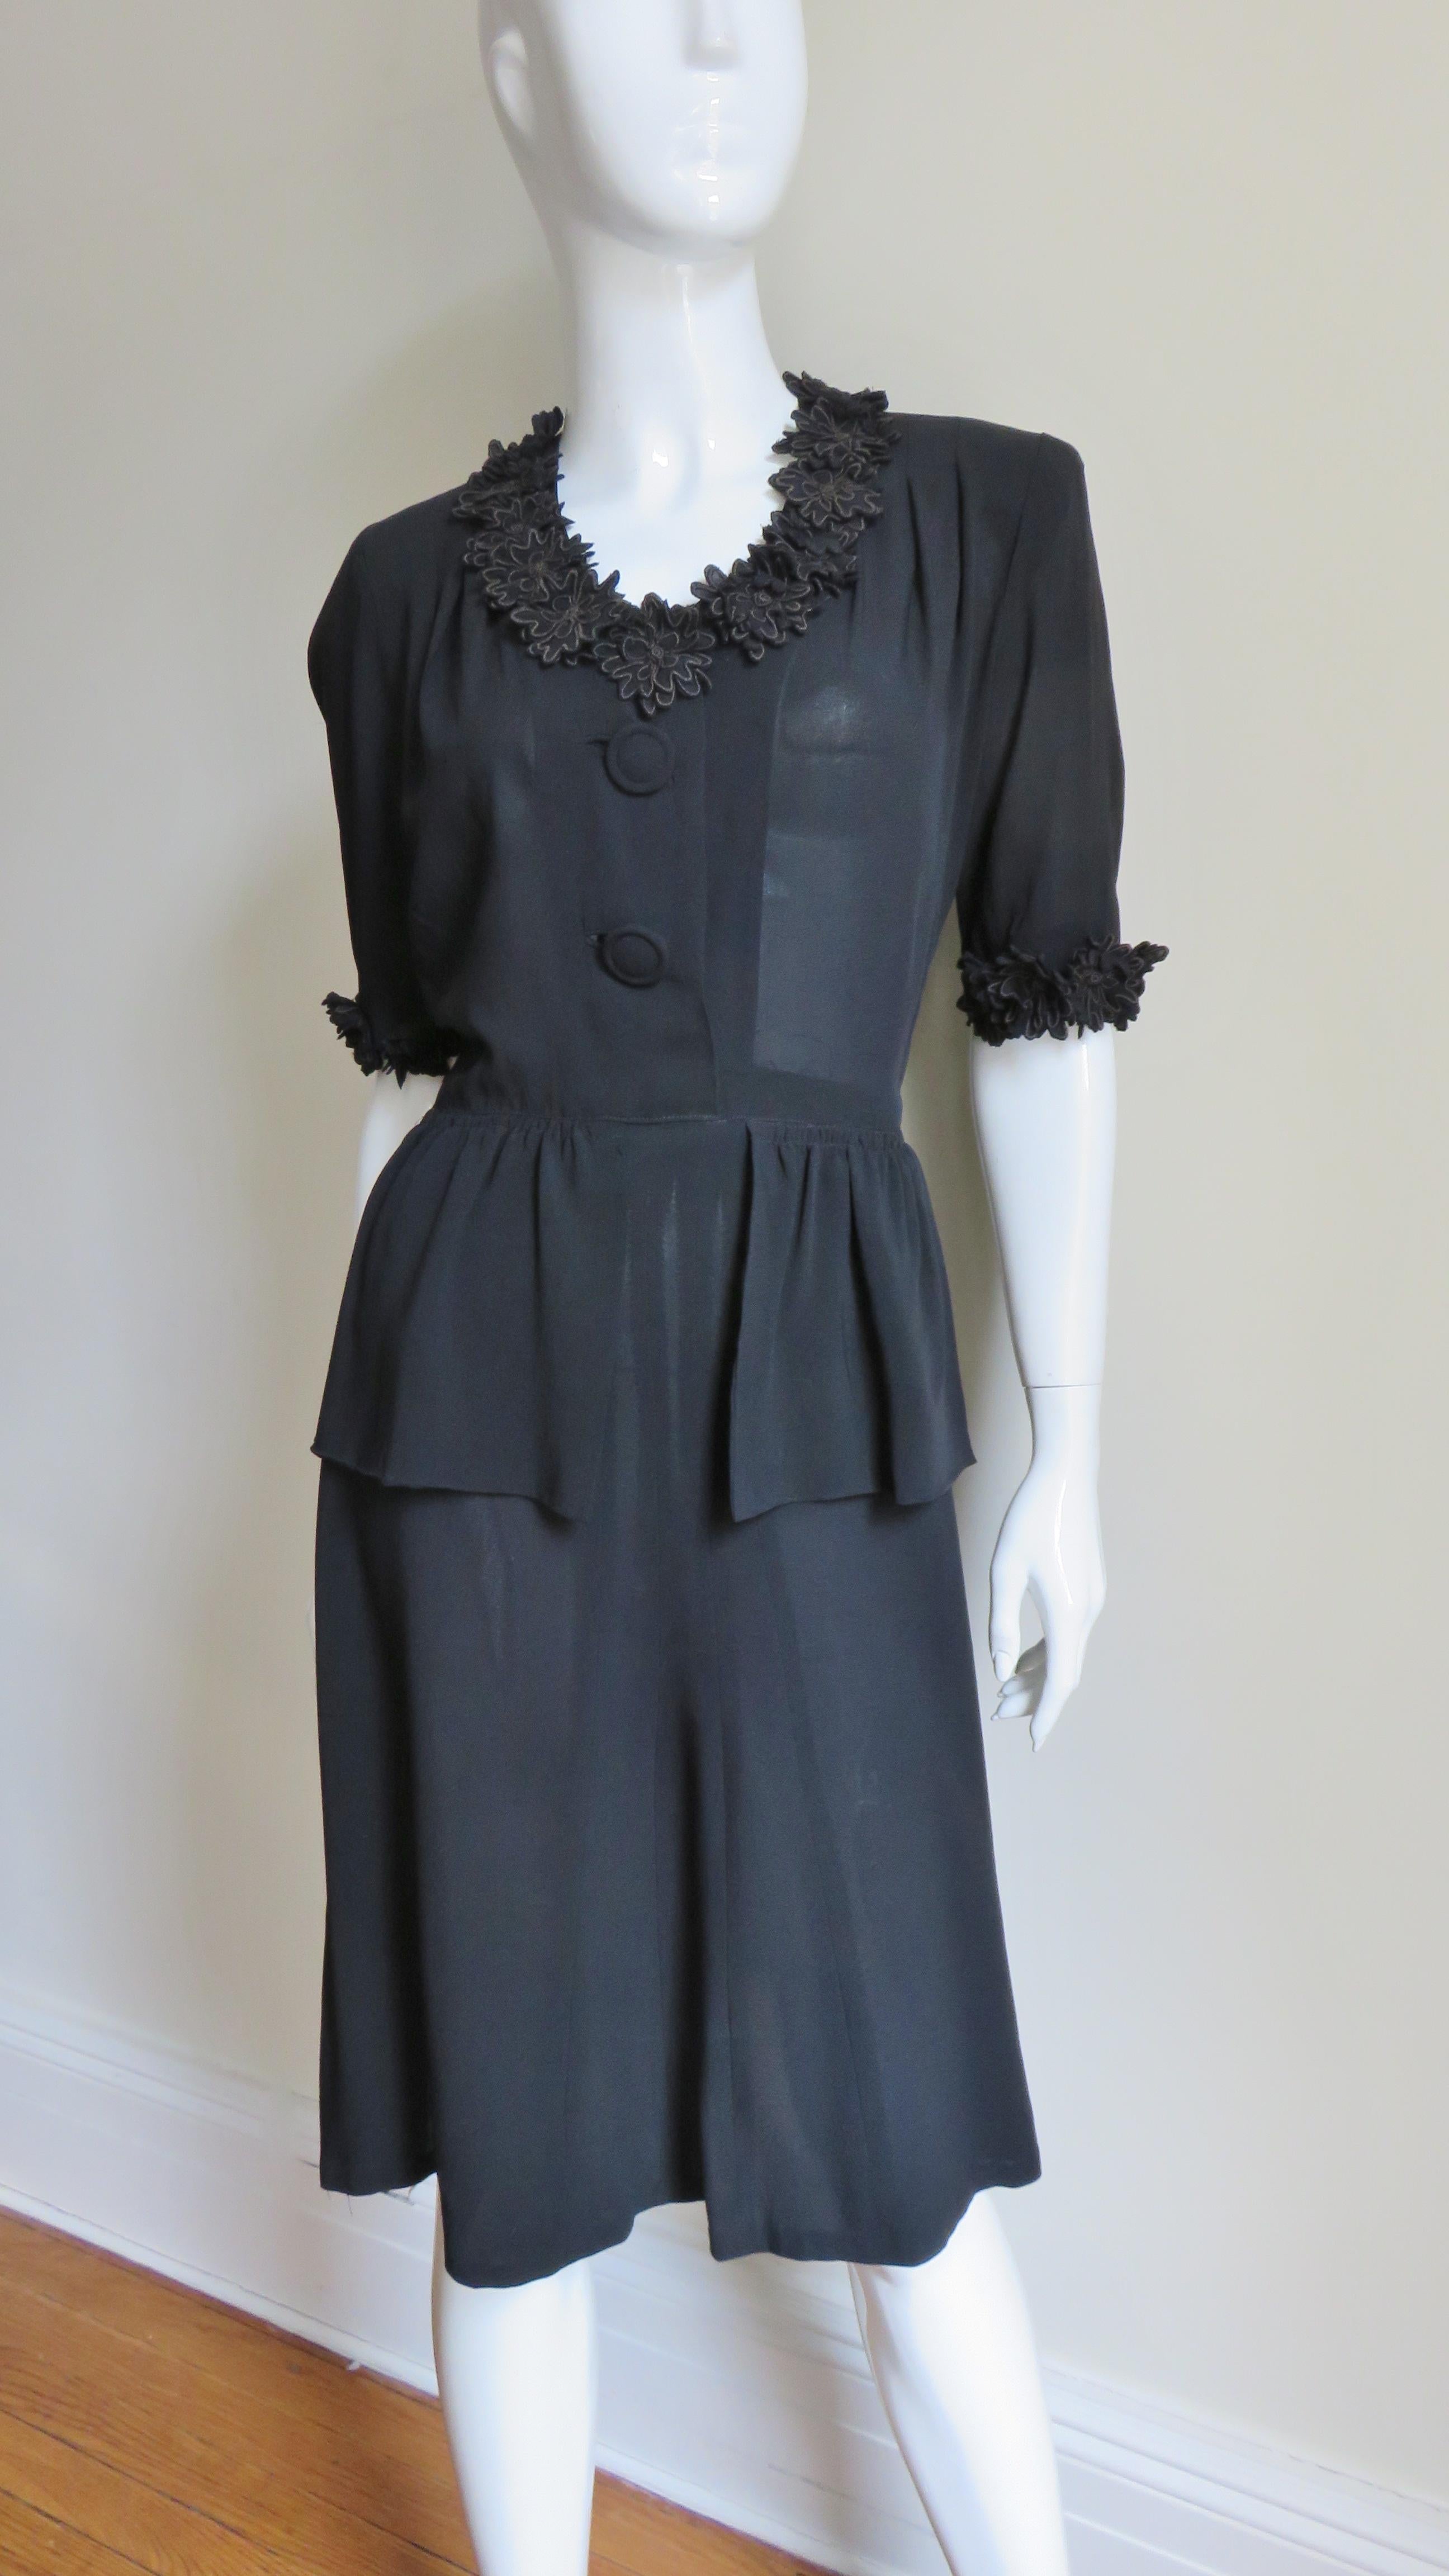 Une fabuleuse petite robe noire en soie des années 1940. Elle présente un décolleté en V, des manches aux coudes, des épaulettes et un péplum sur le devant de la jupe trapèze. Le devant du corsage est muni de deux boutons recouverts et de